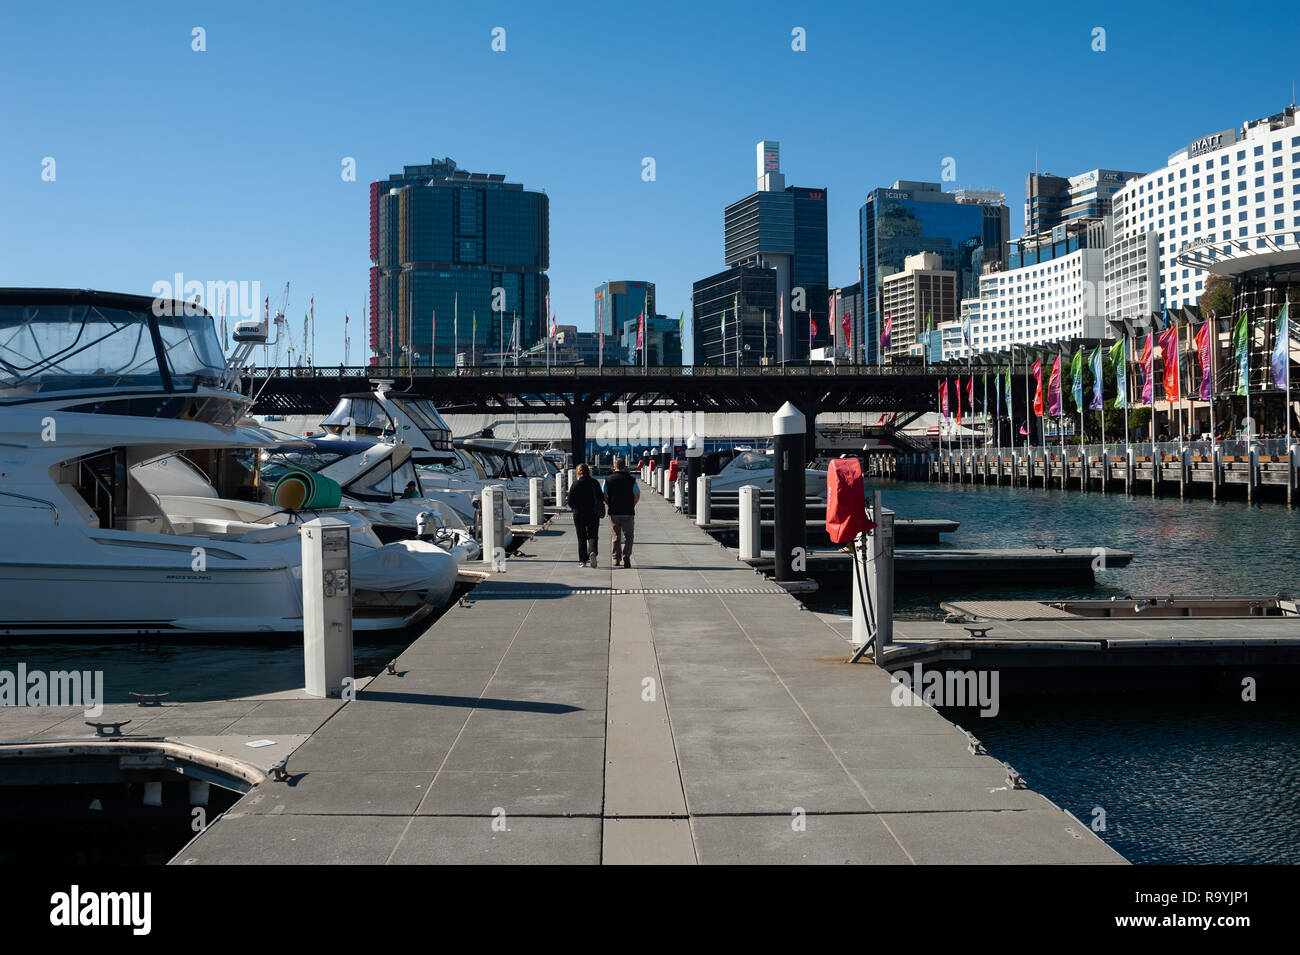 16.09.2018, Sydney, New South Wales, Australien - Boote und Yachten liegen an einer Anlegestelle in der Cockle Bay mit Blick auf den Darling Harbour u Stock Photo